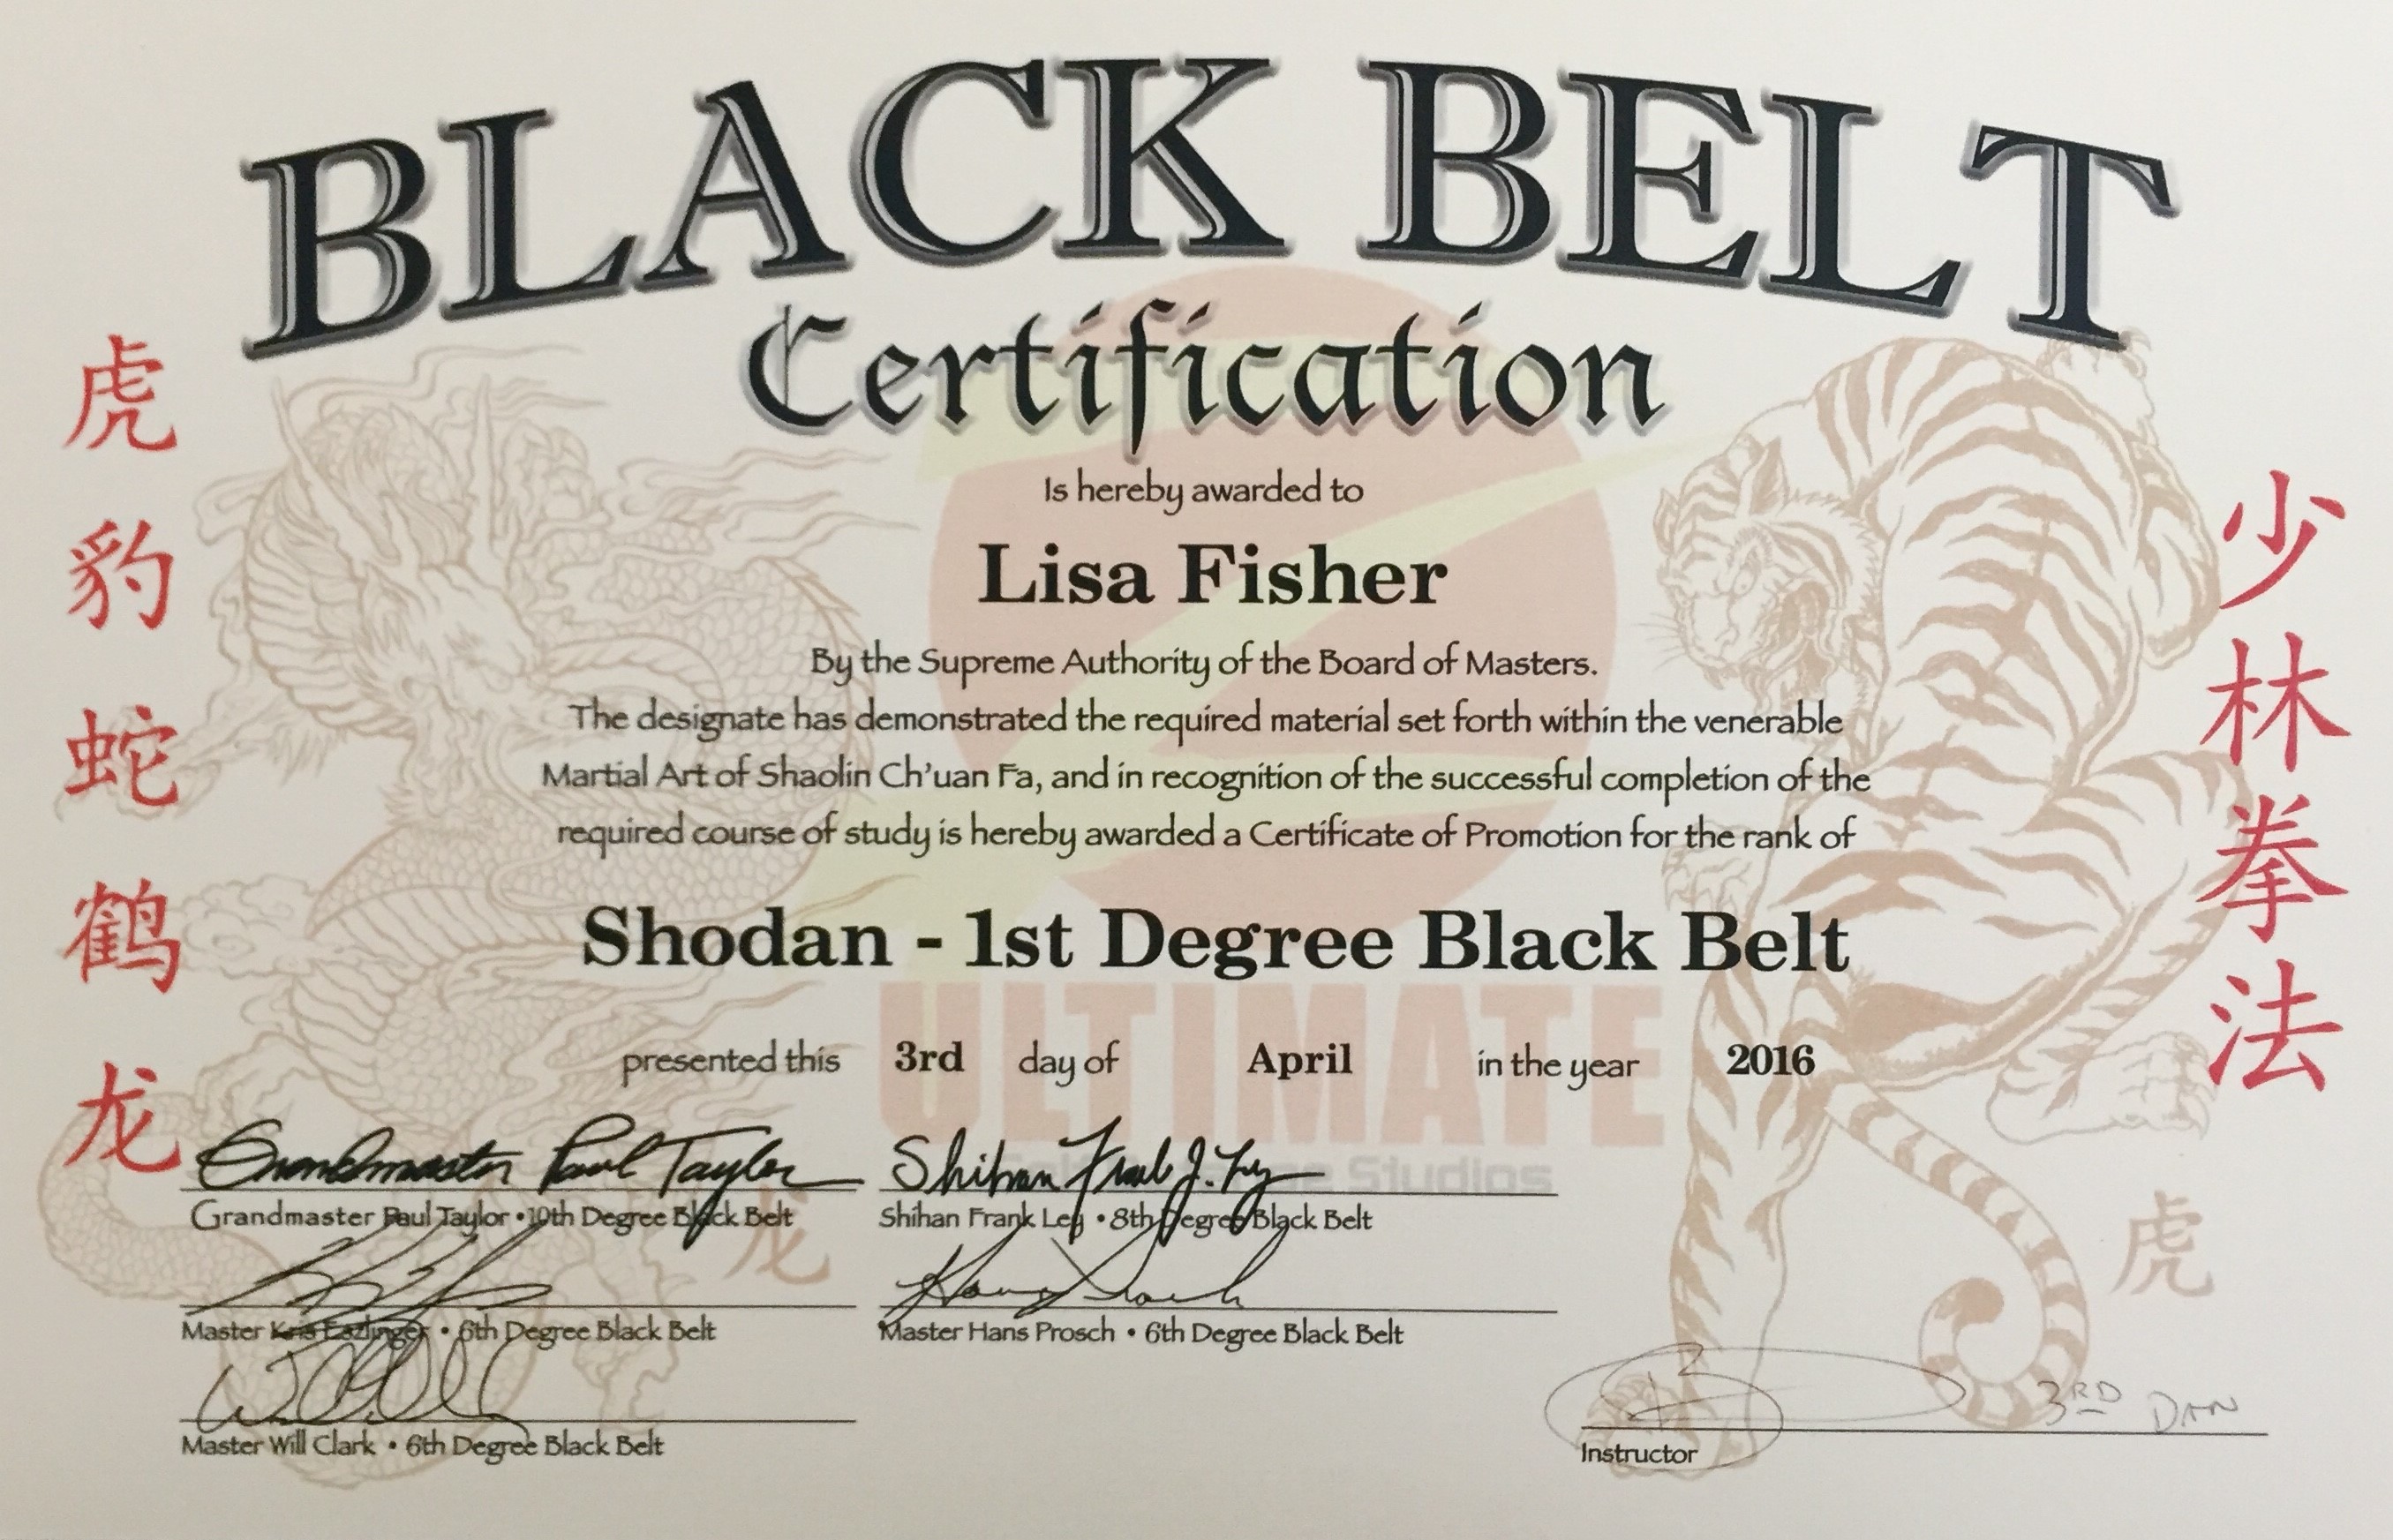 About – Black Belt Buddha